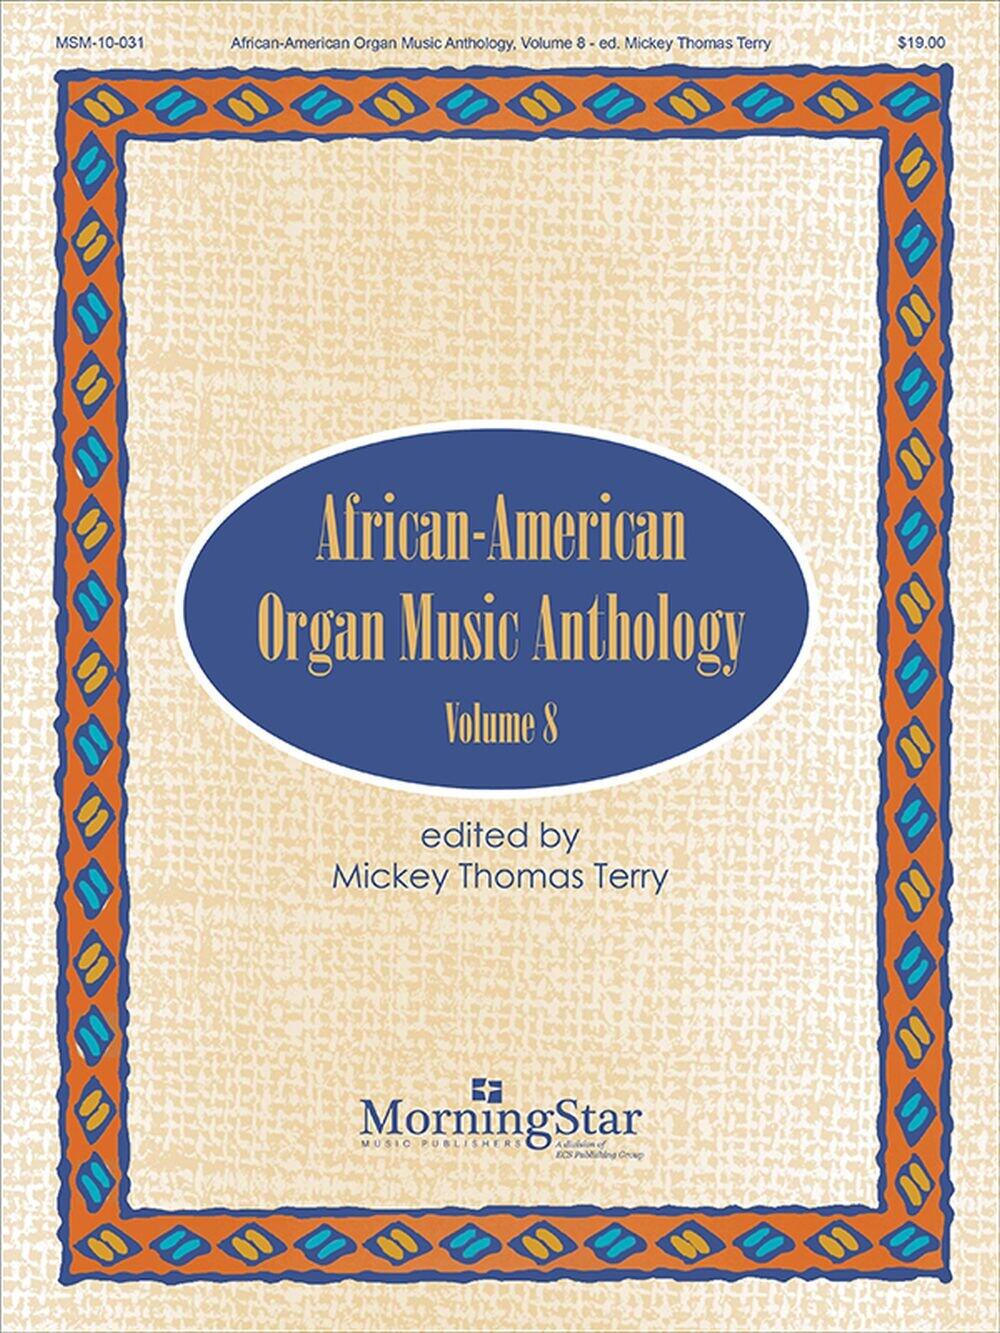 African-American Organ Music Anthology Volume 8 : photo 1